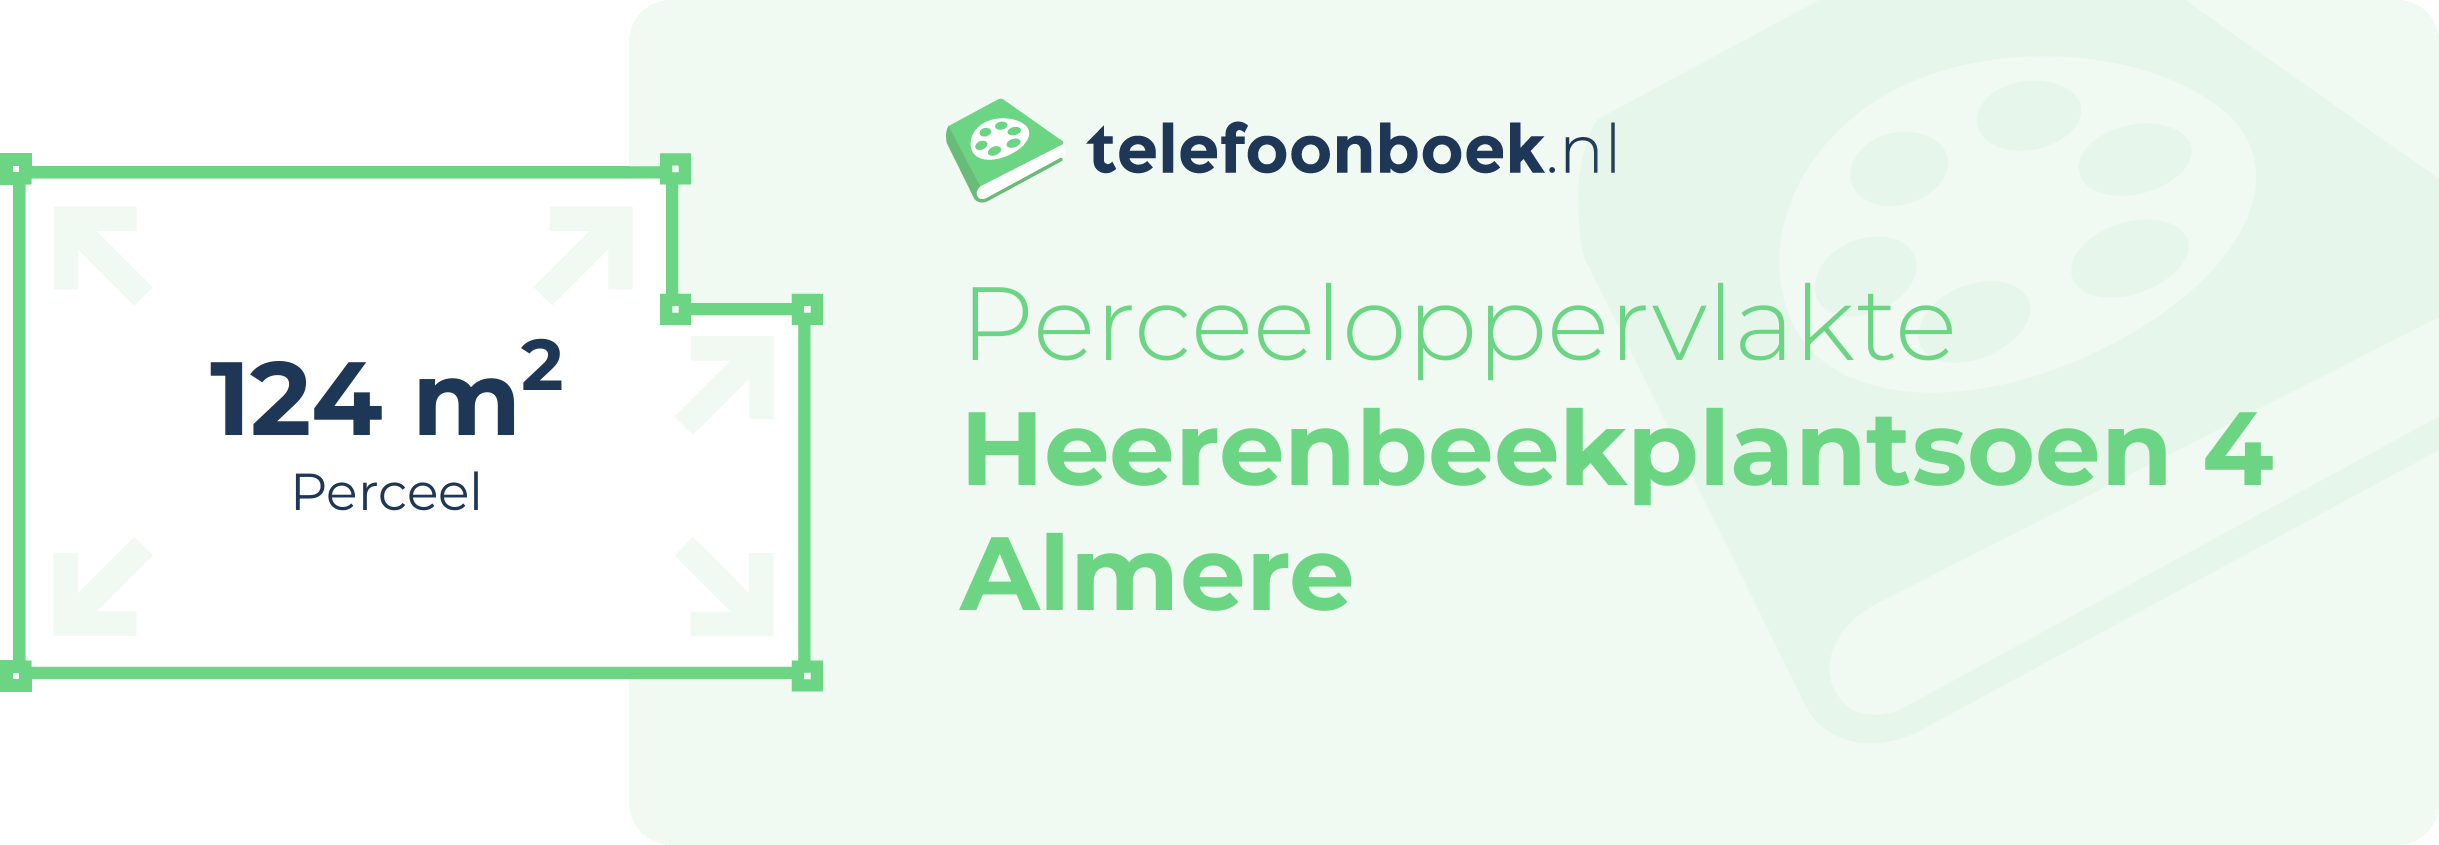 Perceeloppervlakte Heerenbeekplantsoen 4 Almere